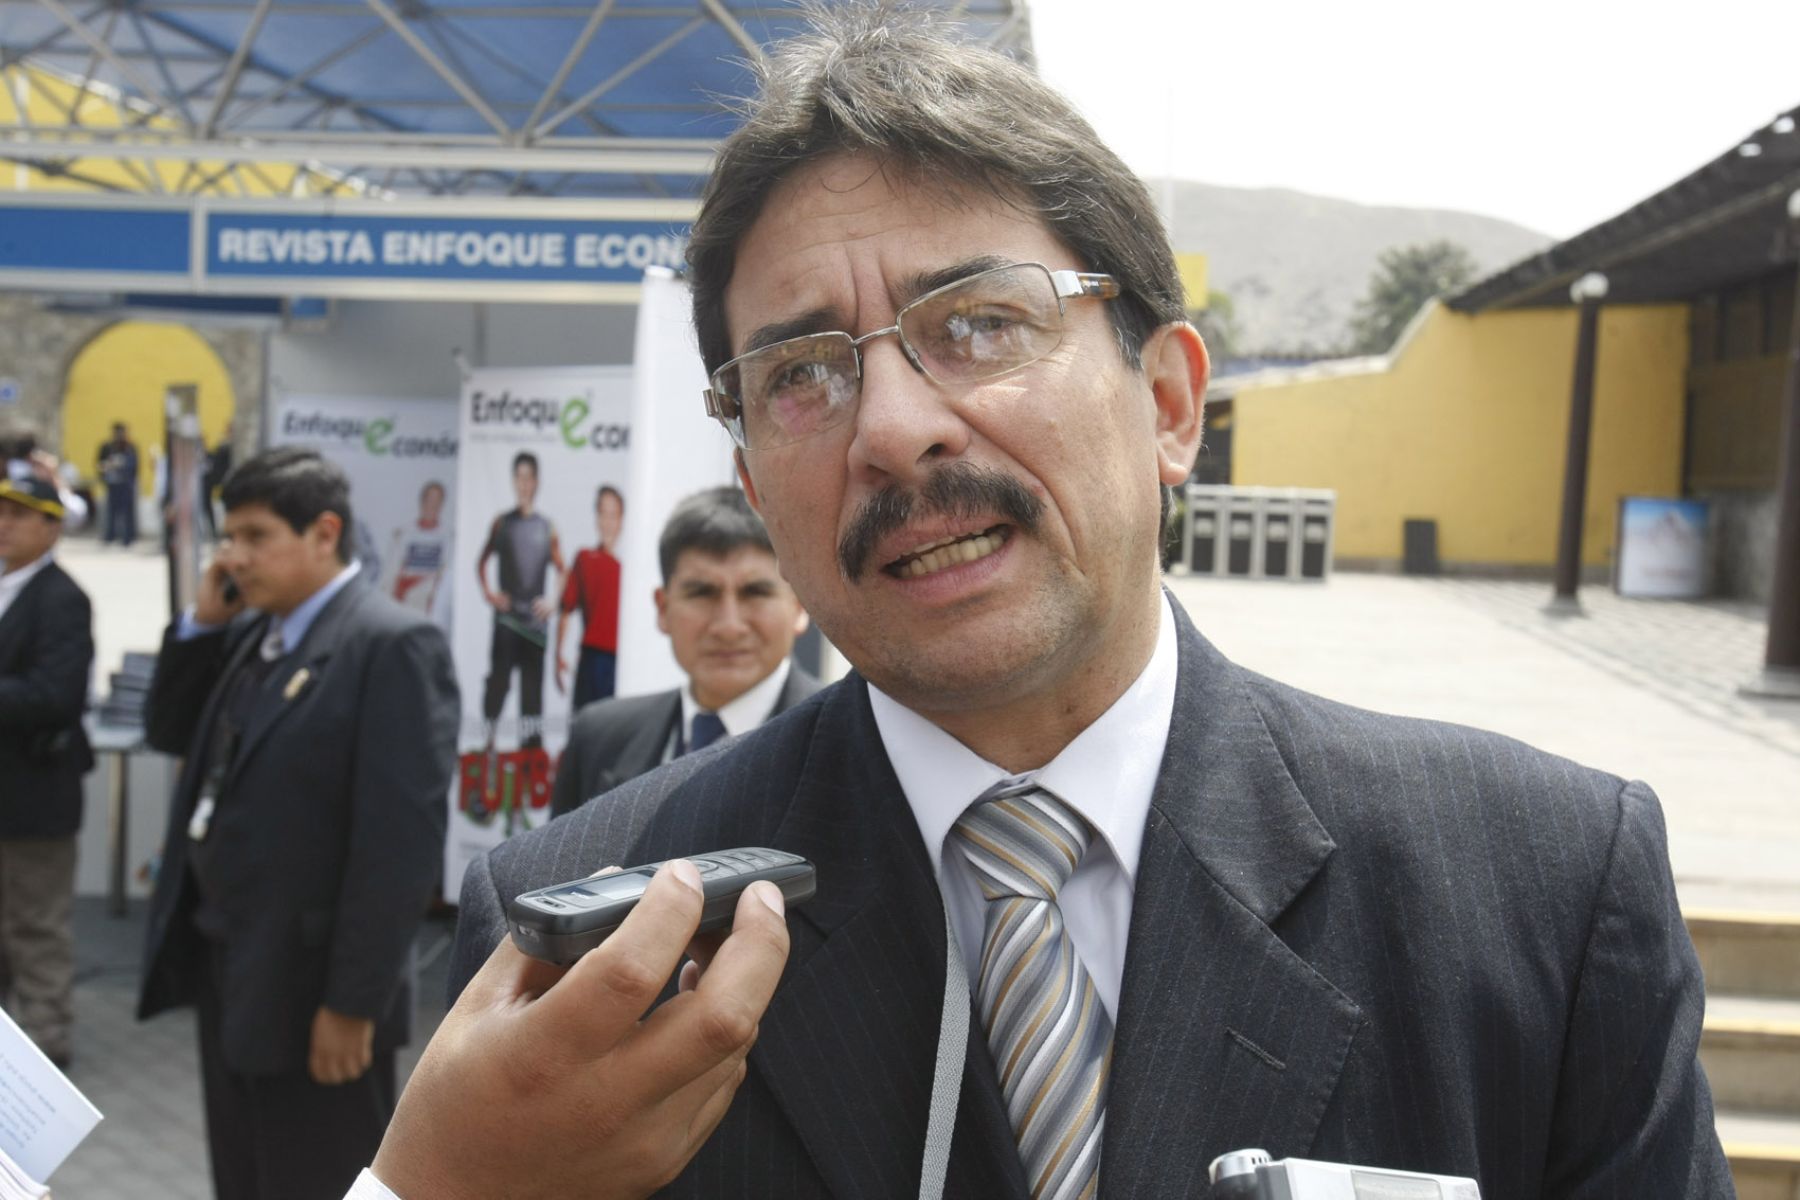 Ministro de Vivienda, Enrique Cornejo, declara en CADE 2008. Foto: ANDINA/Juan Carlos Guzmán Negrini.